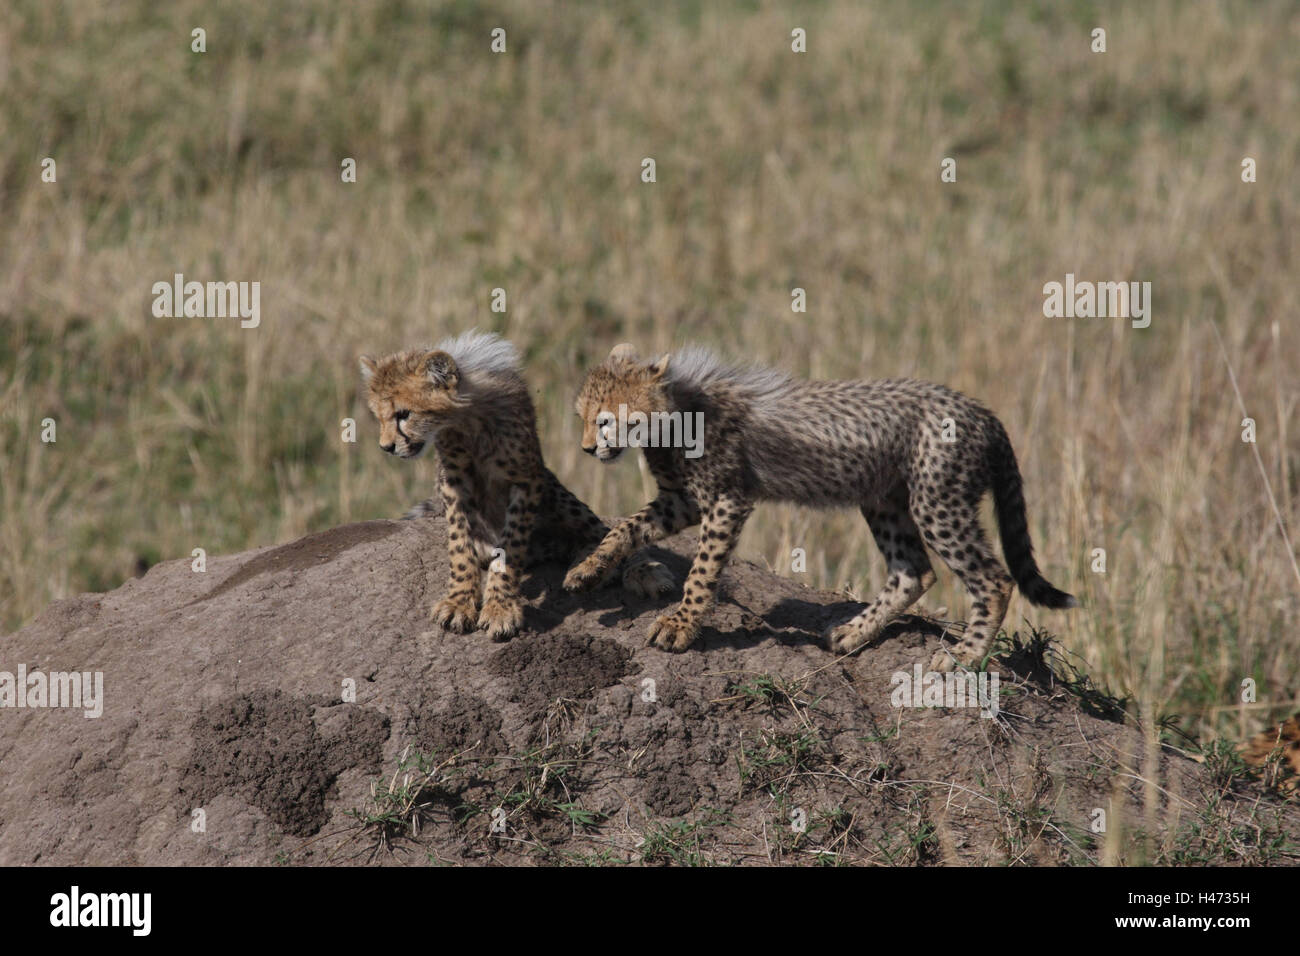 A los guepardos, dos animales jóvenes Foto de stock